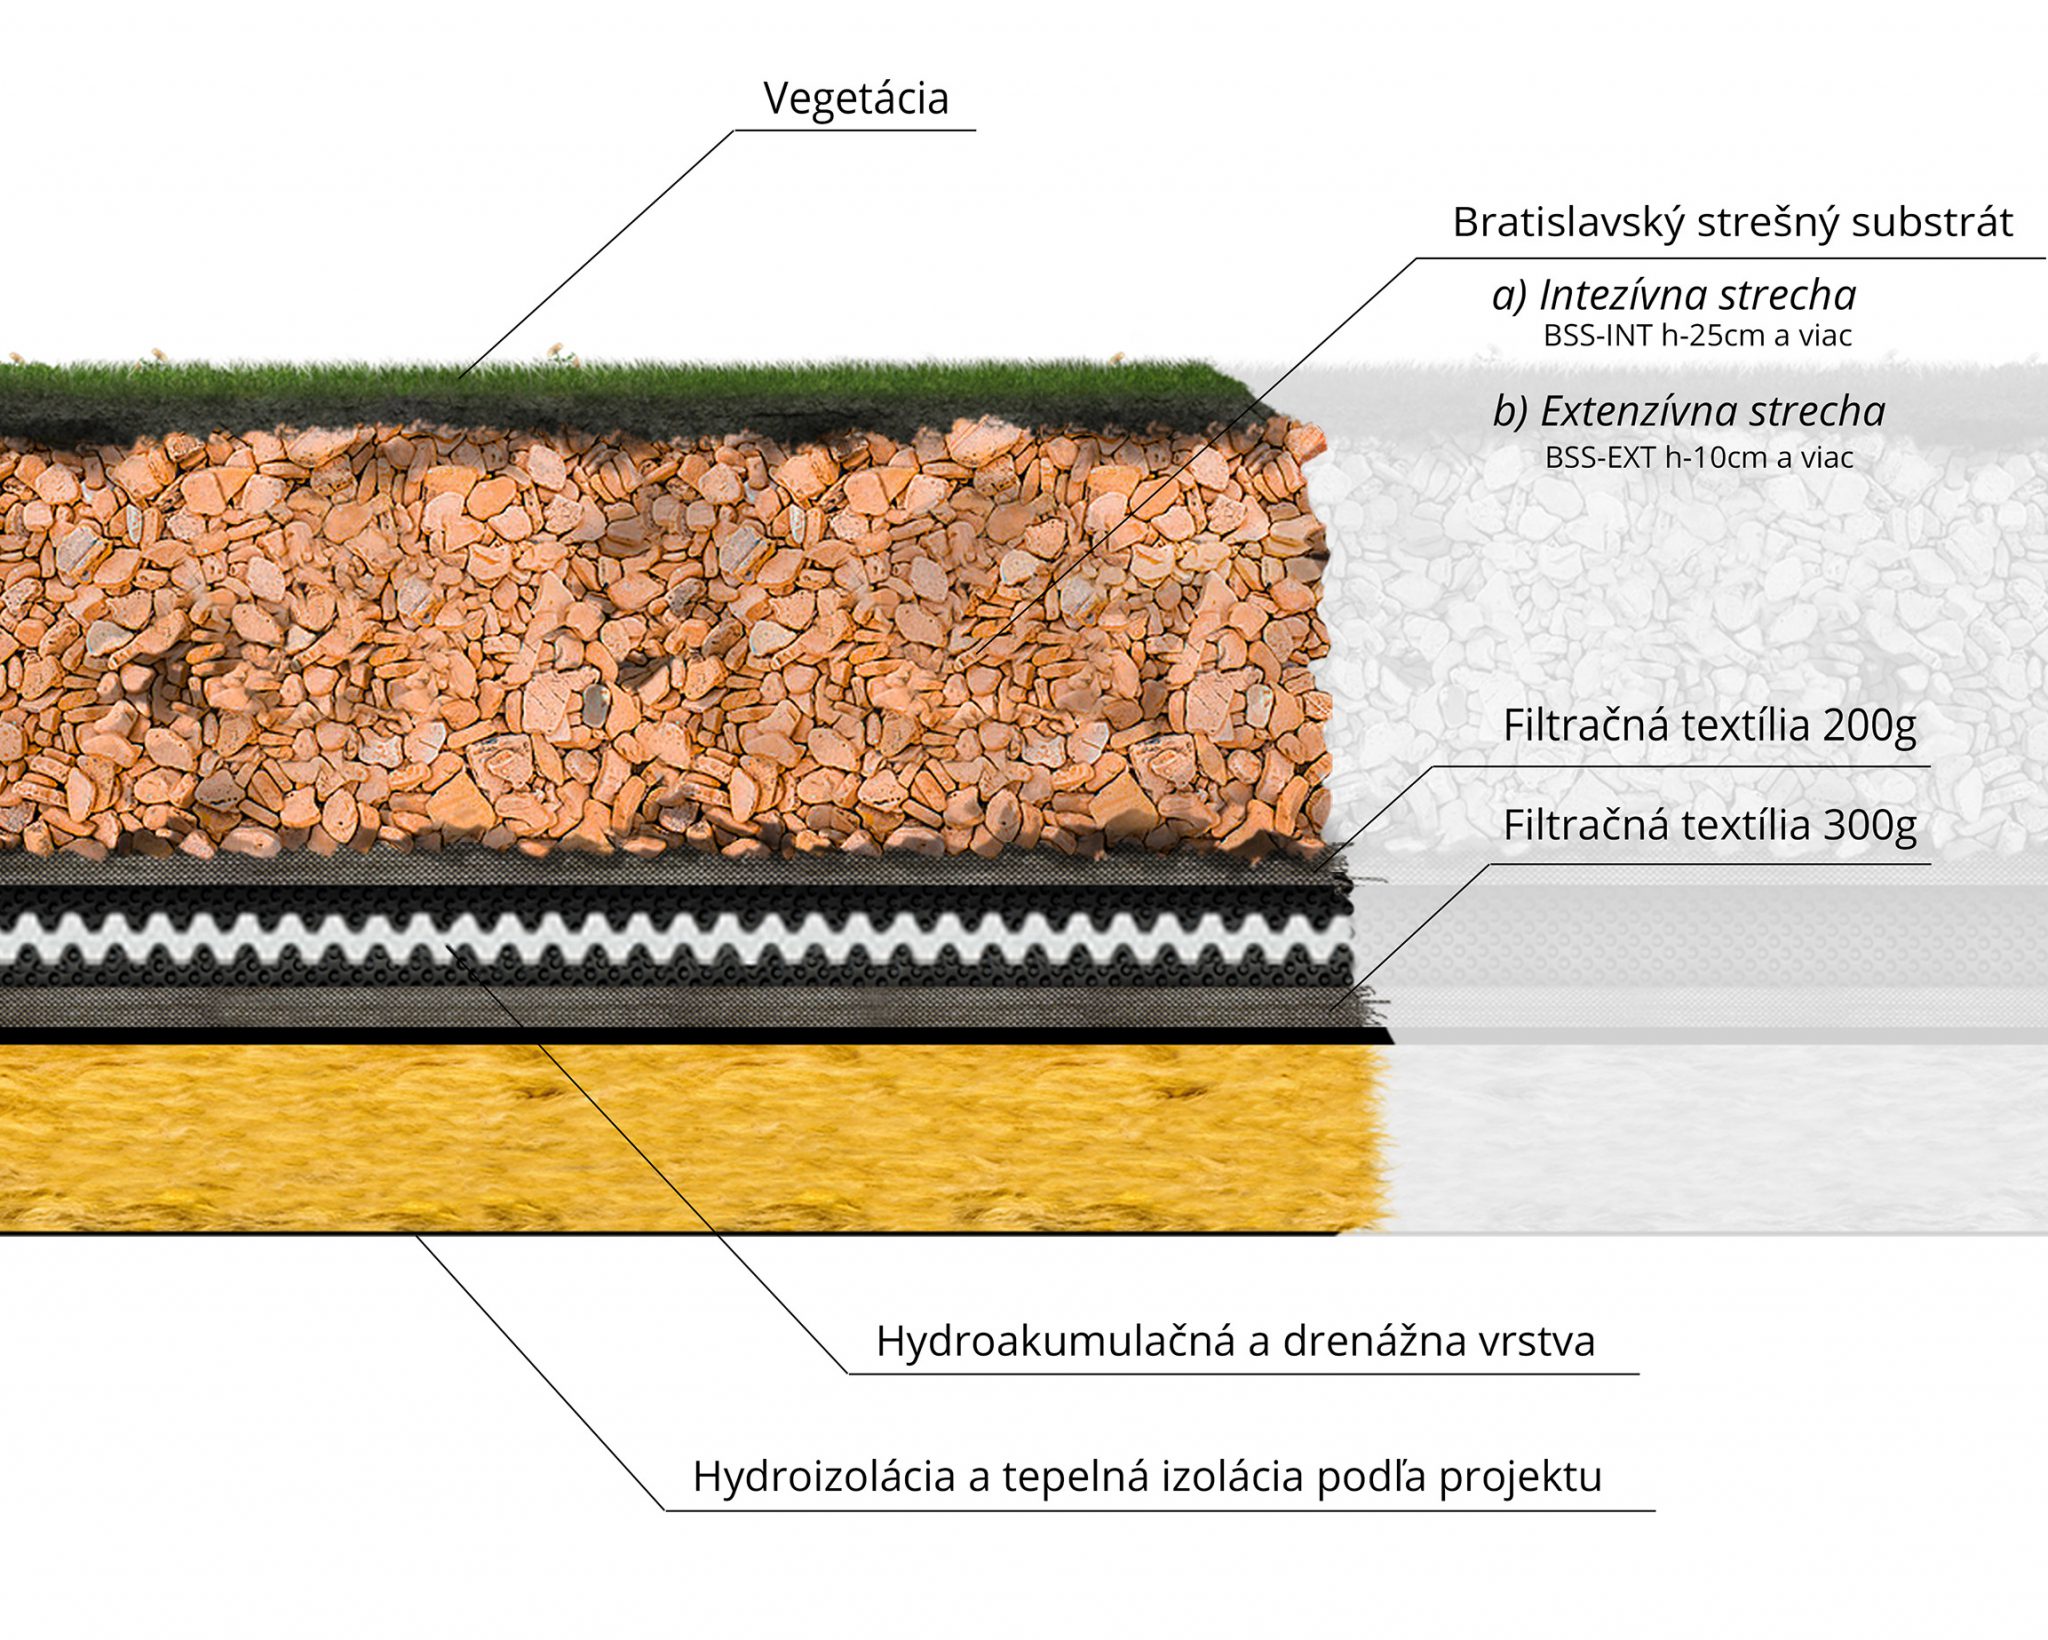 Vegetácia | Bratislavský strešný substrát: a) Intenzívna strecha (BSS-INT h-25cm a viac), b) Extenzívna strecha (BSS-EXT h-10cm a viac) | Filtračná textília 200g | Filtračná textília 300g | Hydroakumulačná a drenážna vrstva, Hydroizolácia a tepelná izolácia podľa projektu